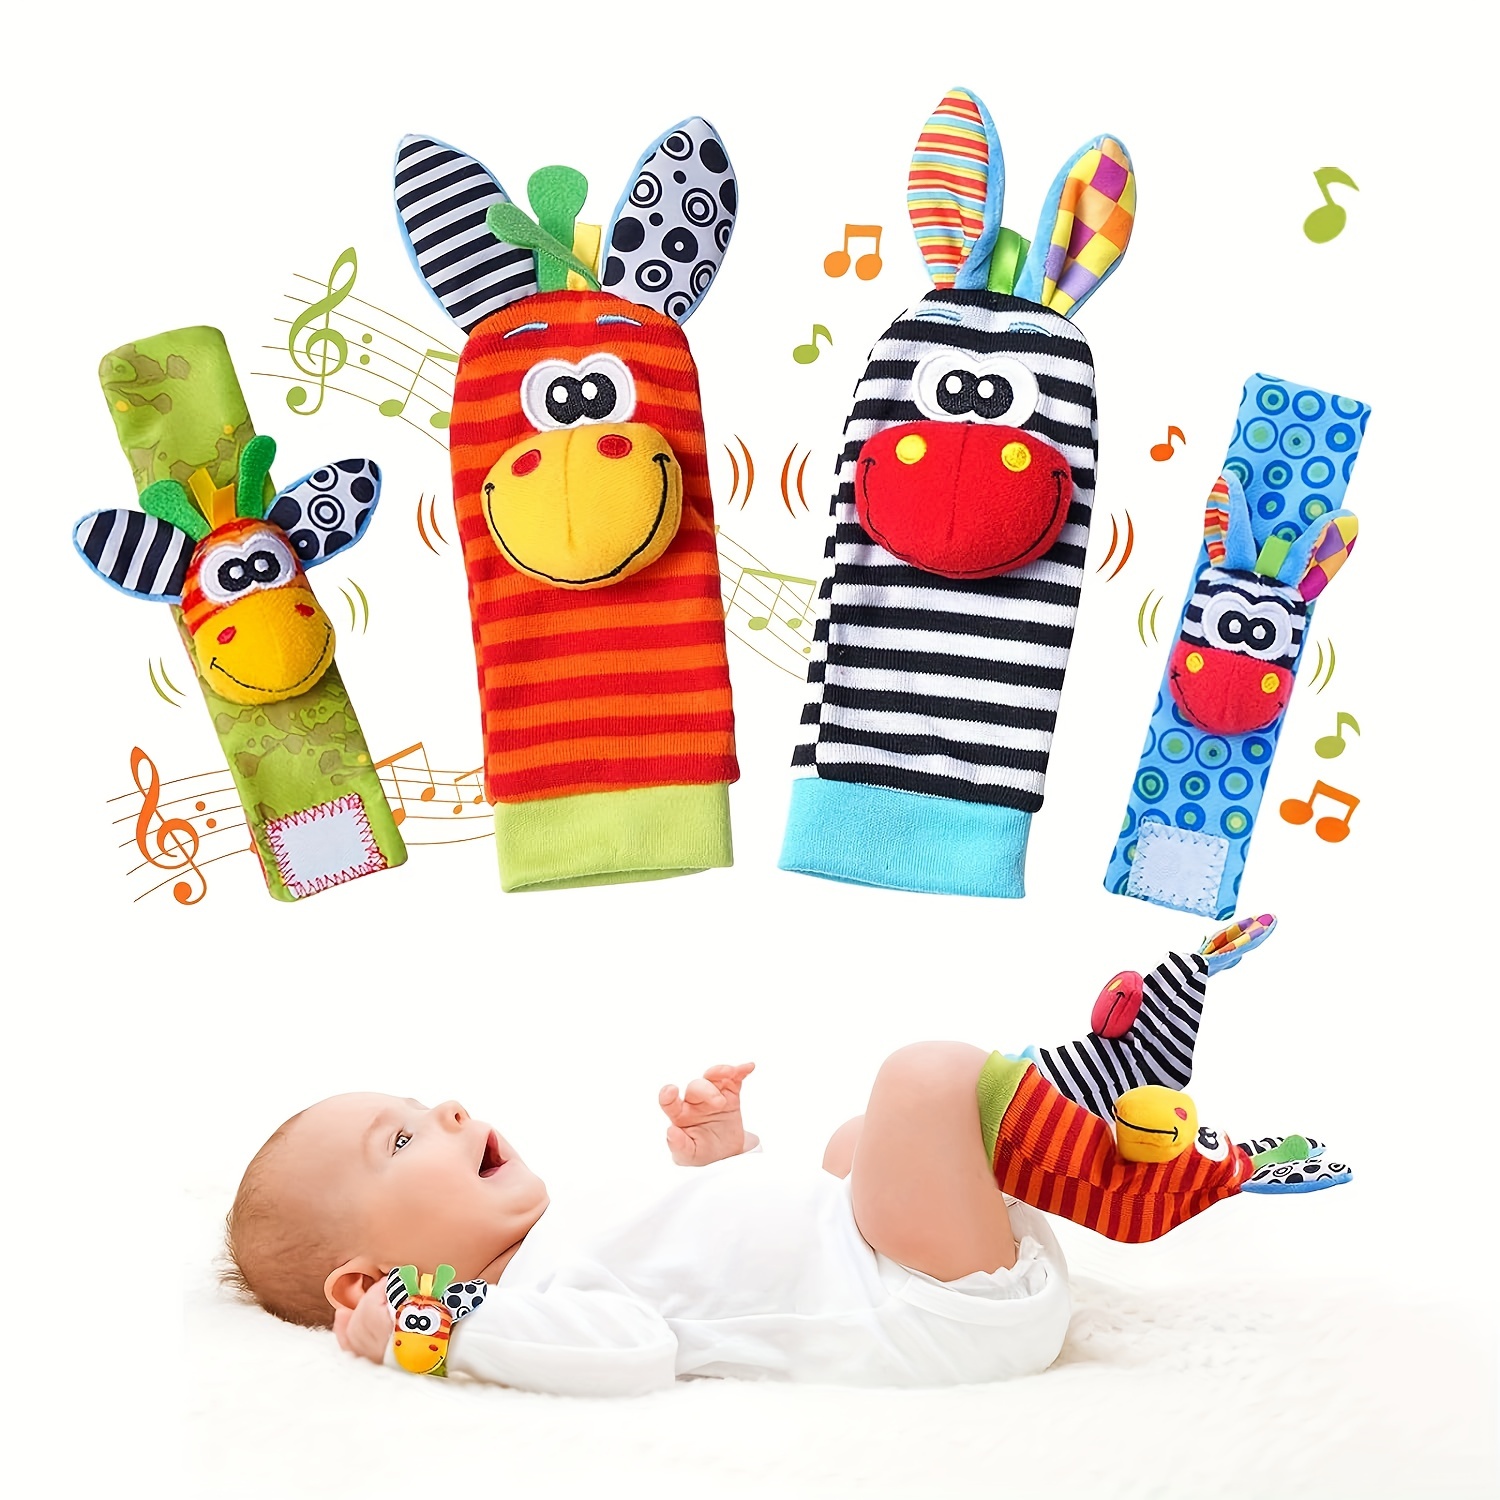  AZEN 20 juguetes para bebés de 3 a 6 meses, sonajeros